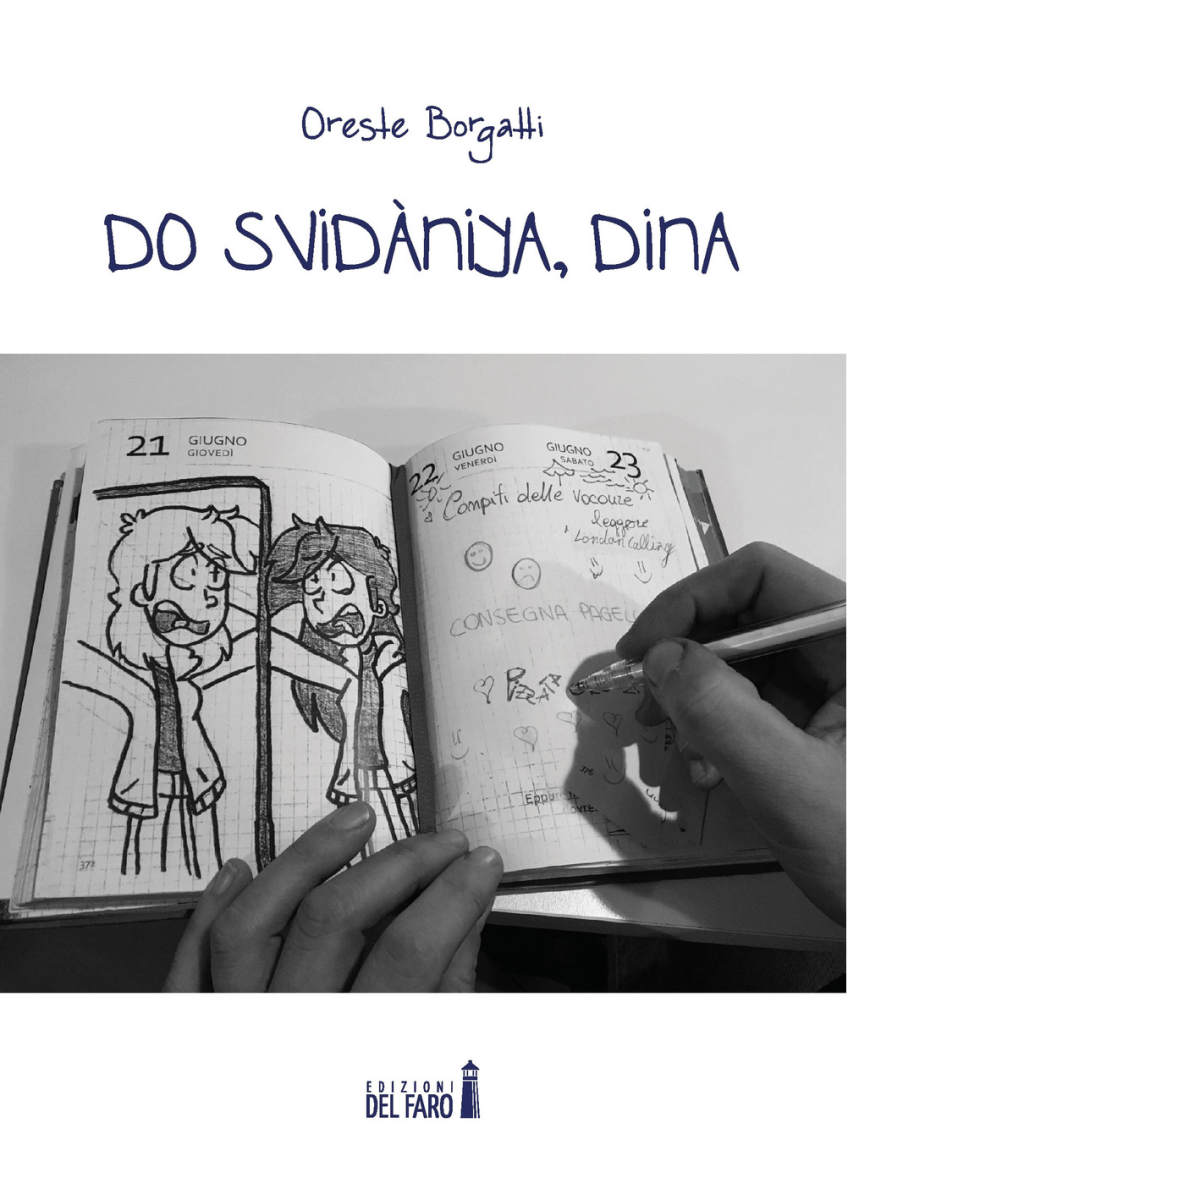 Do svid?niya, Dina di Borgatti Oreste - Edizioni Del faro, 2019 libro usato